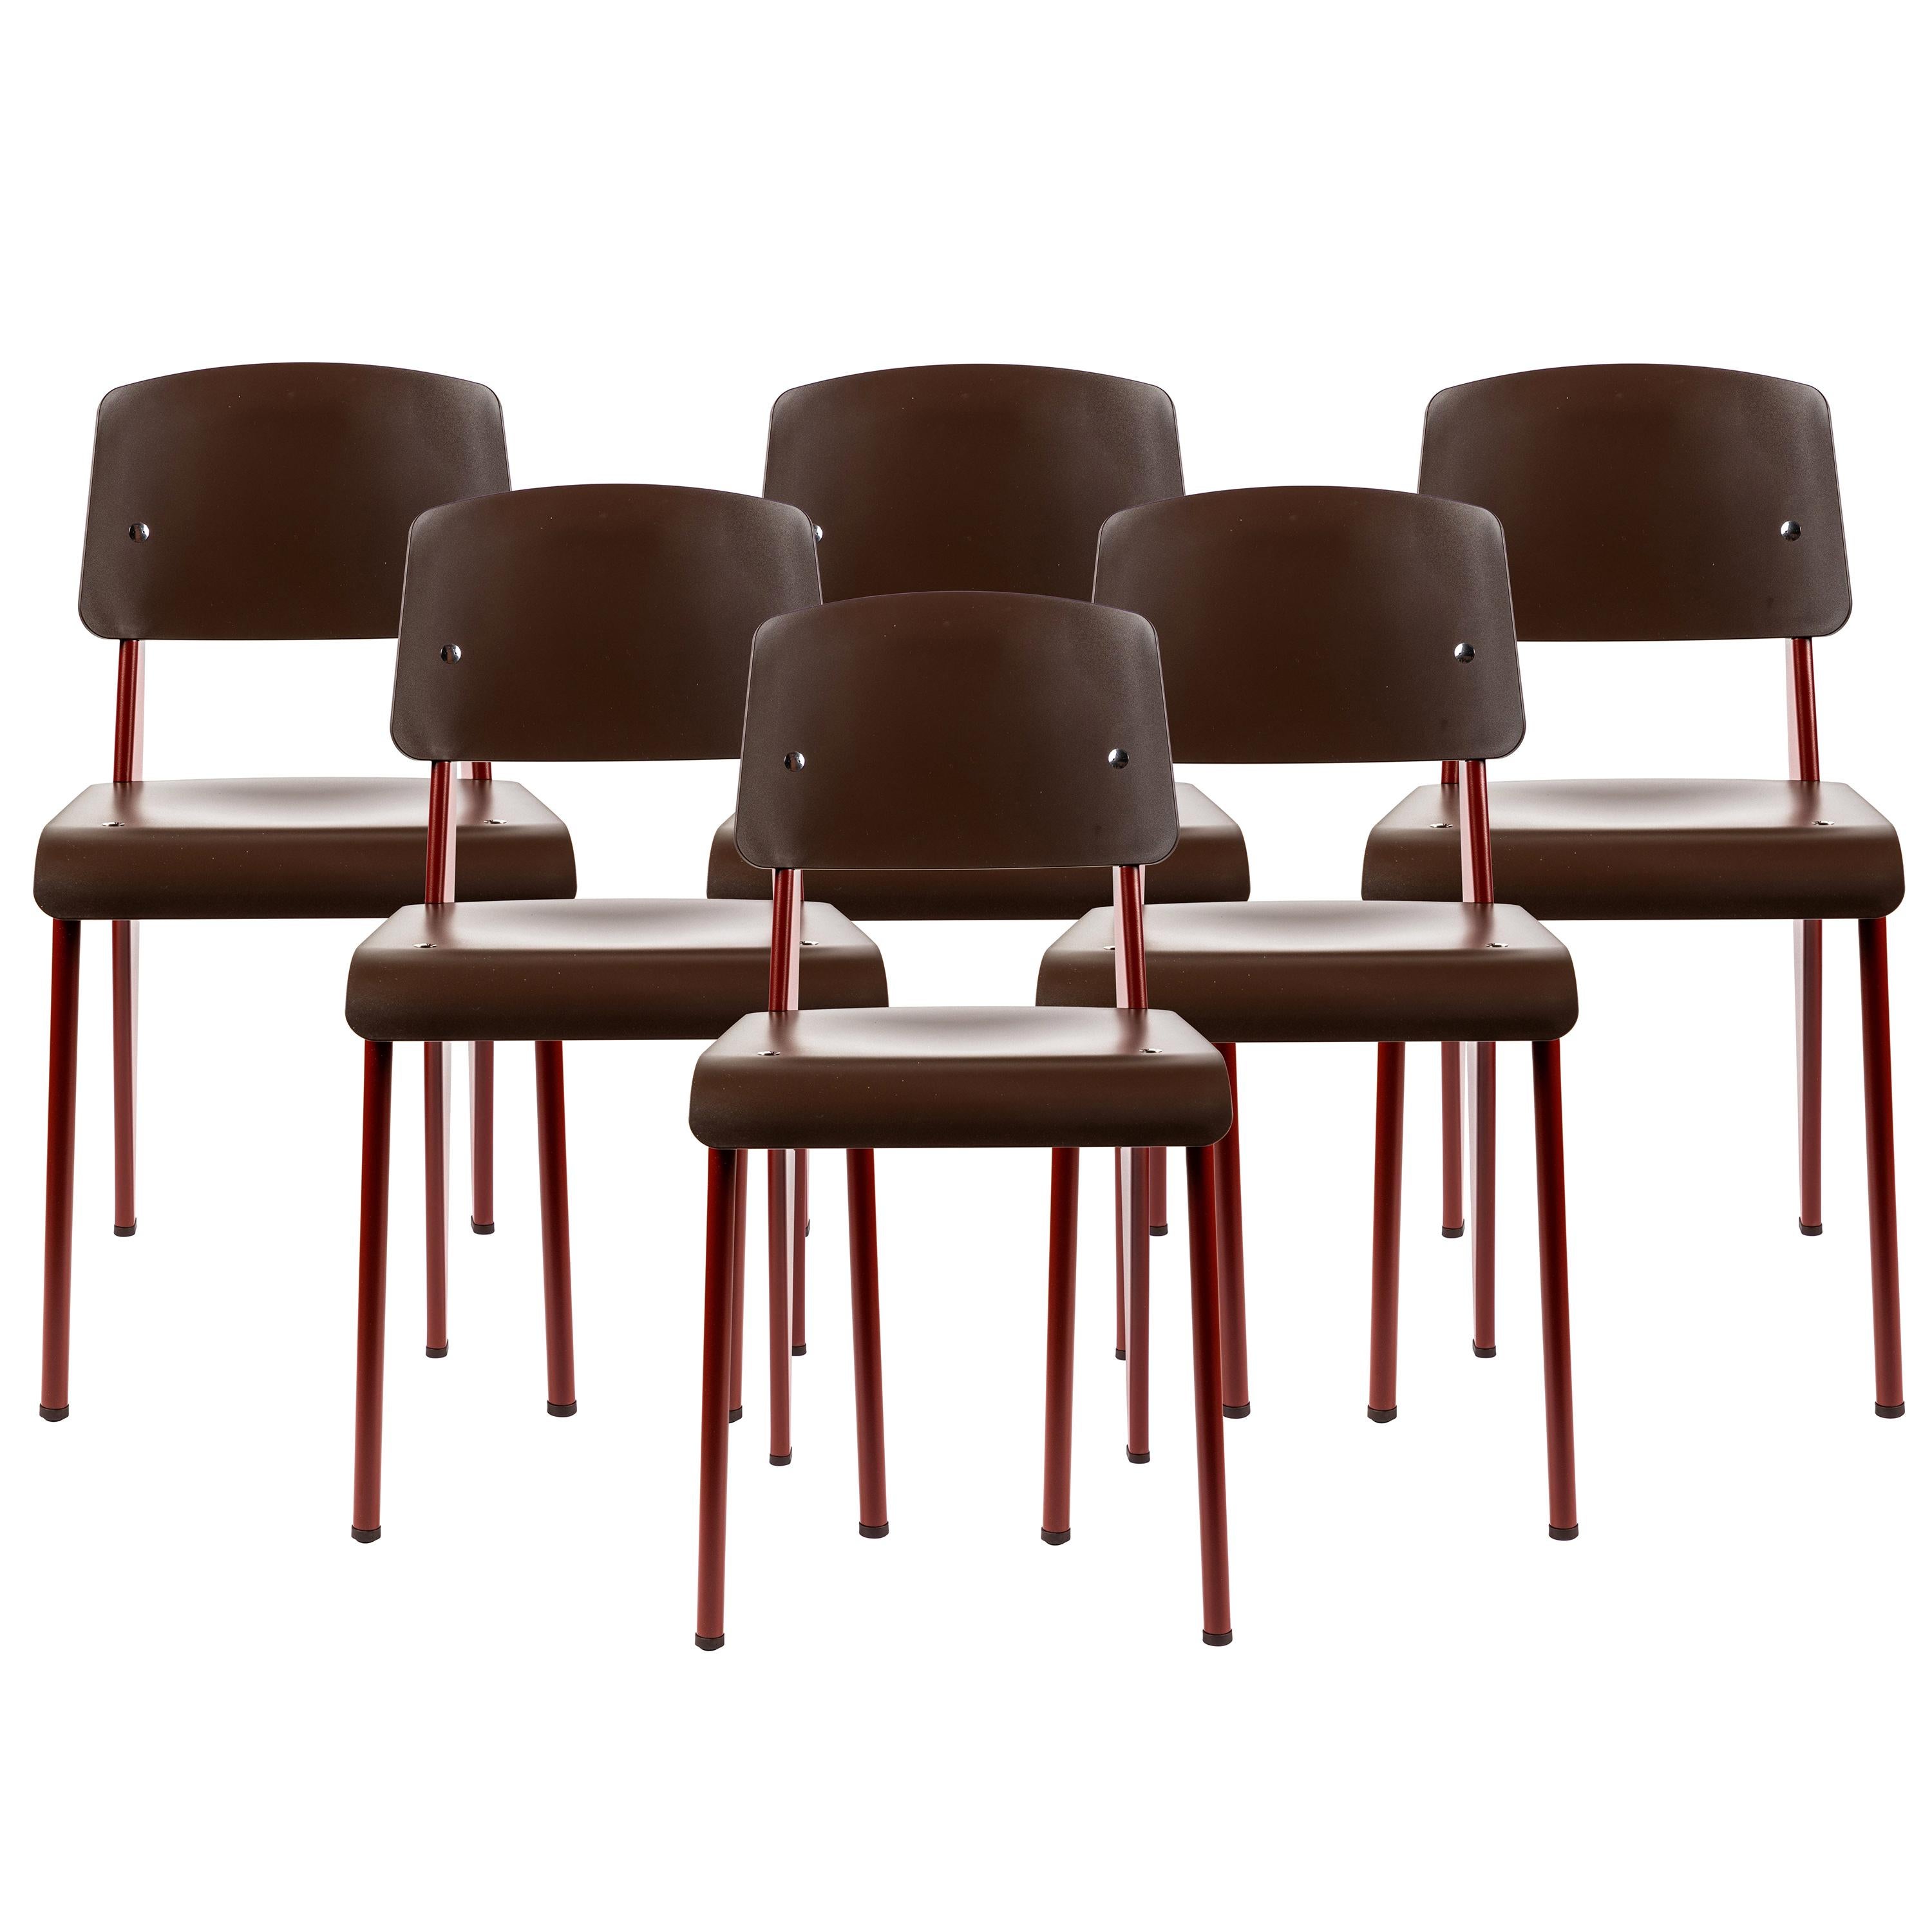 6 Stühle Jean Prouvé Standard SP in Teak Brown und Rot für Vitra